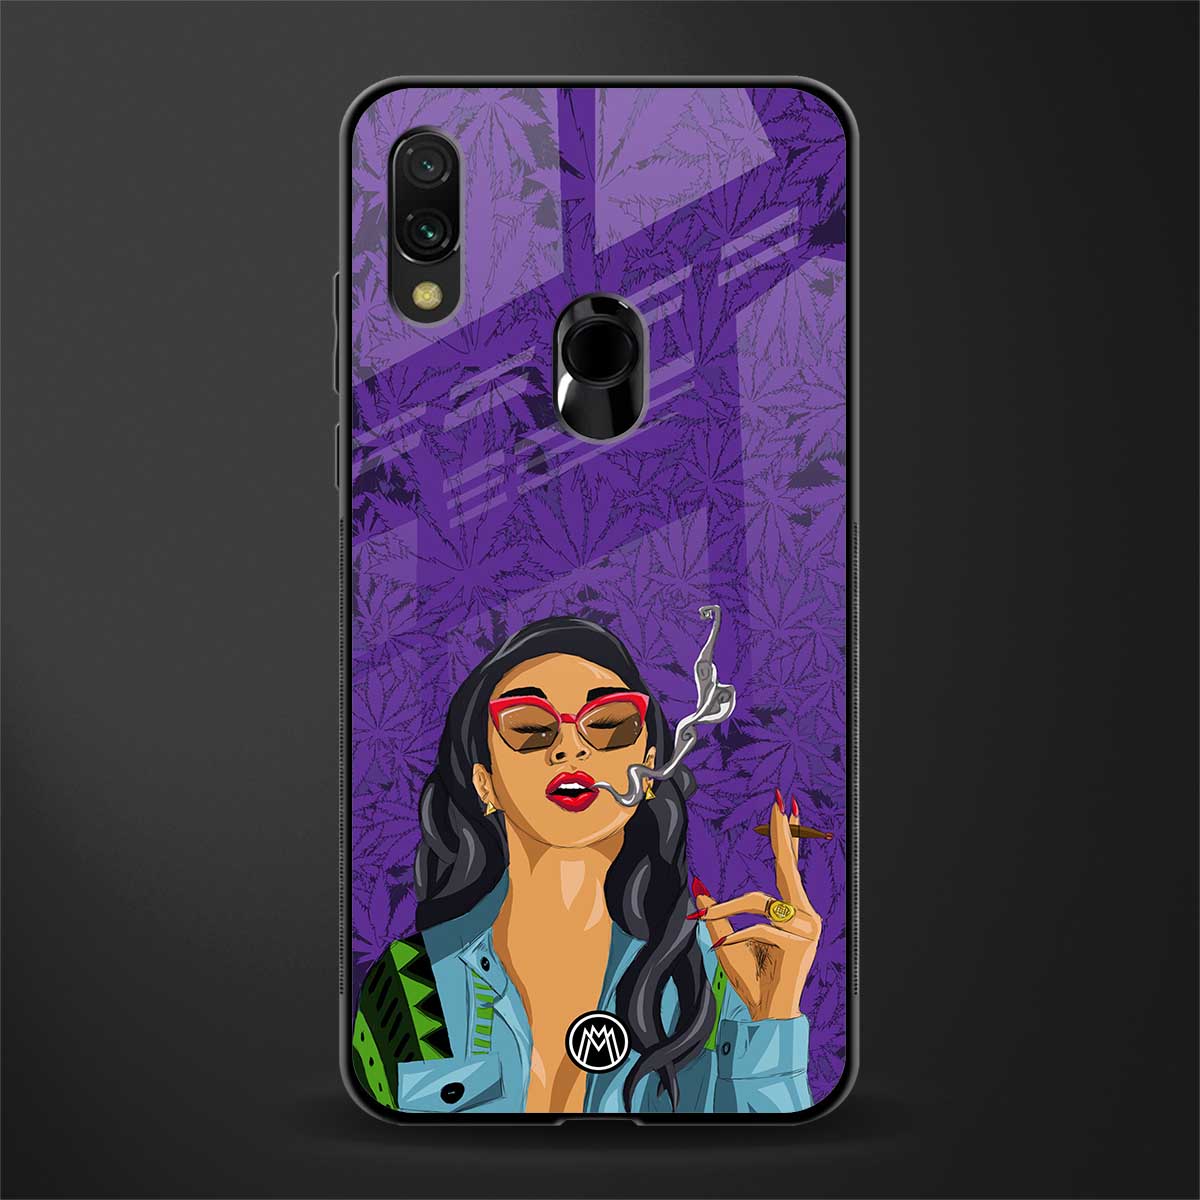 purple smoke glass case for redmi note 7 pro image